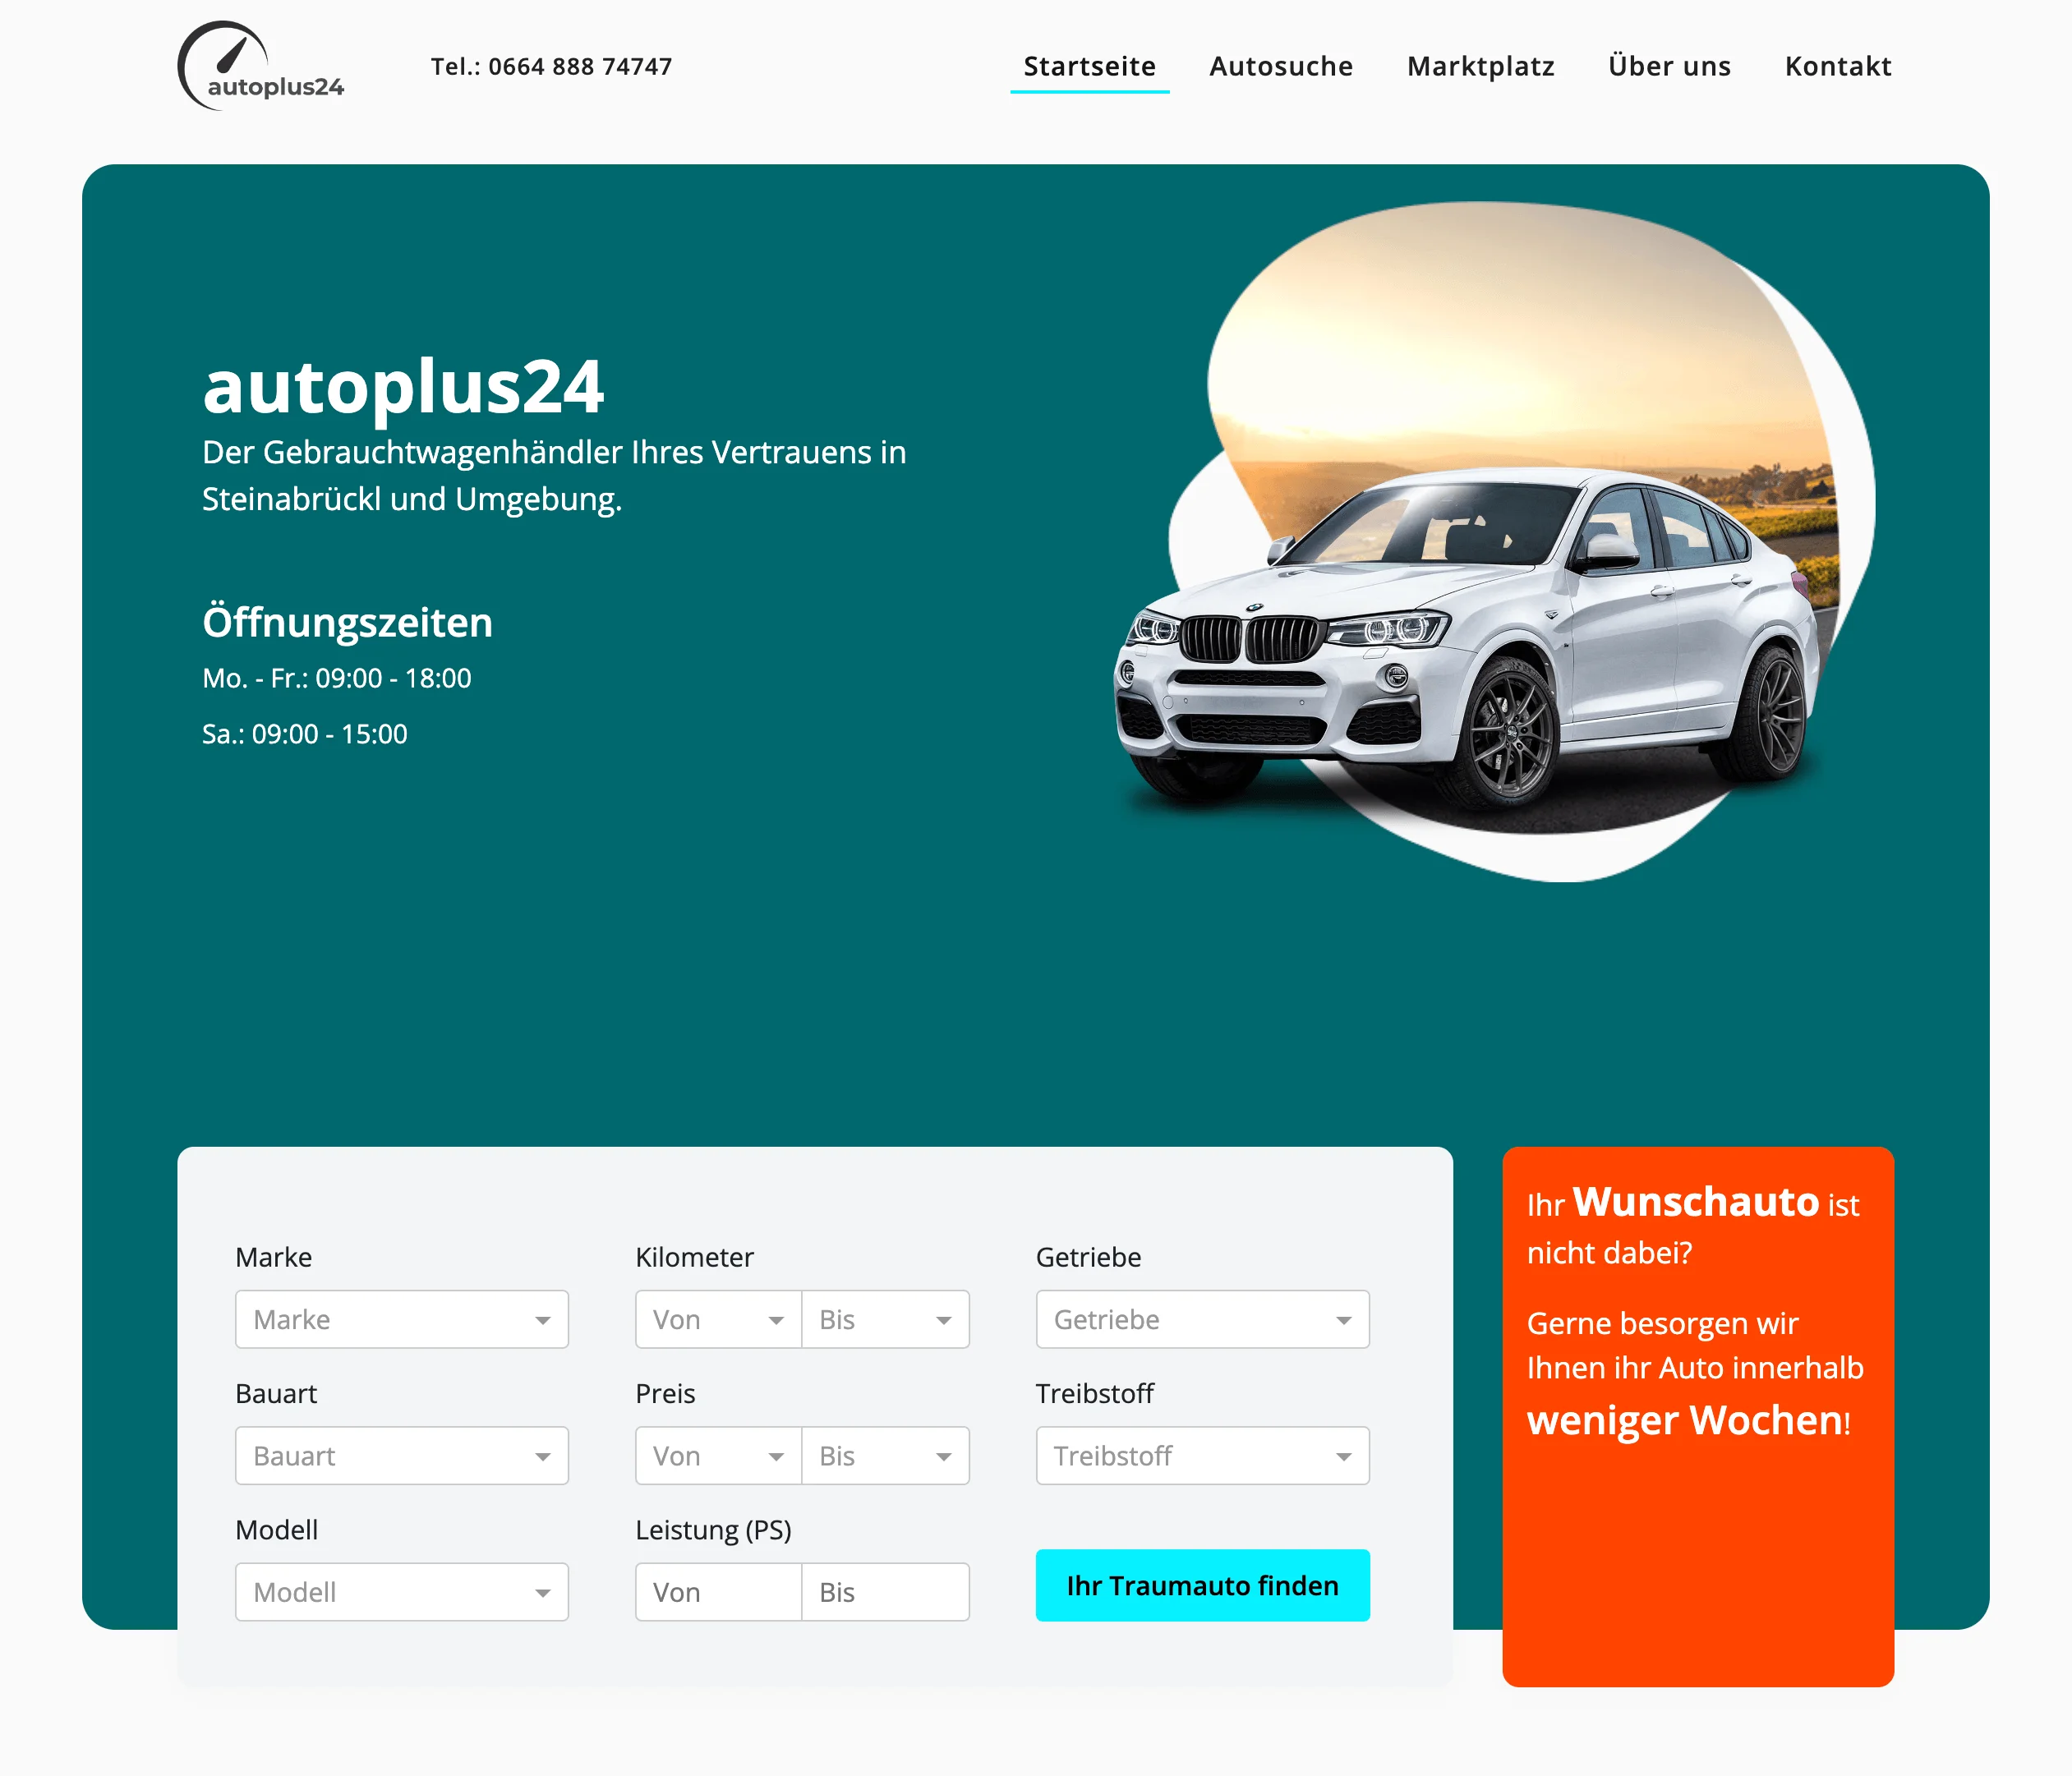 Autoplus24 - Startseite